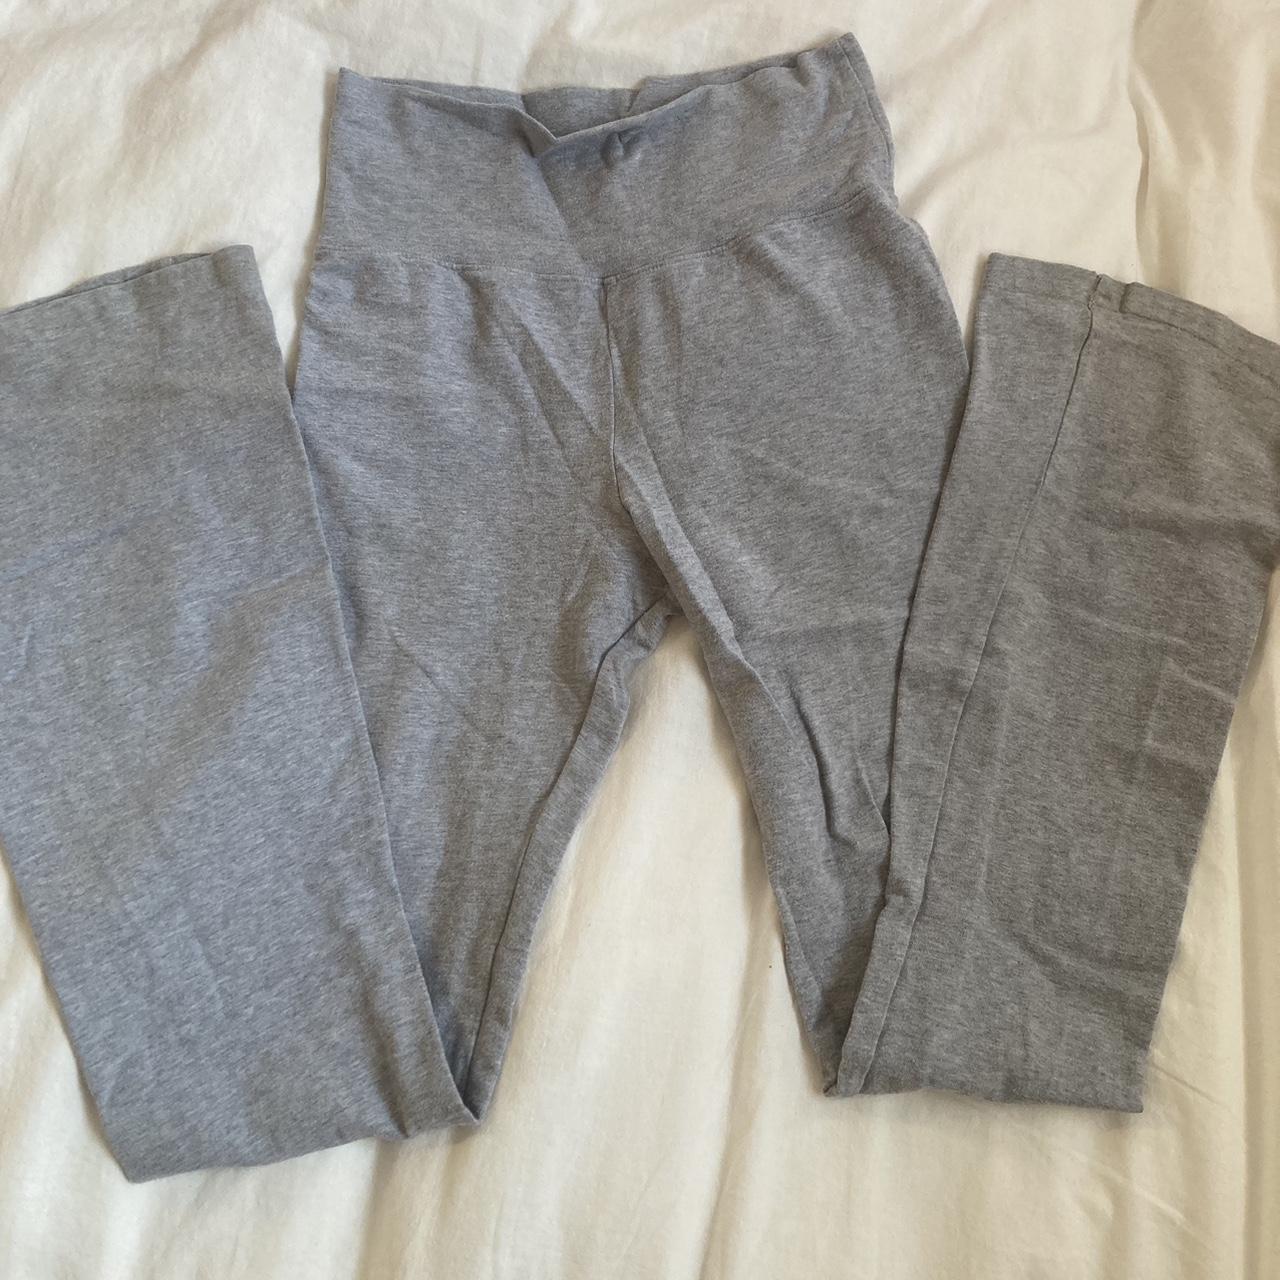 Brandy Melville gray flare leggings Can be folded... - Depop